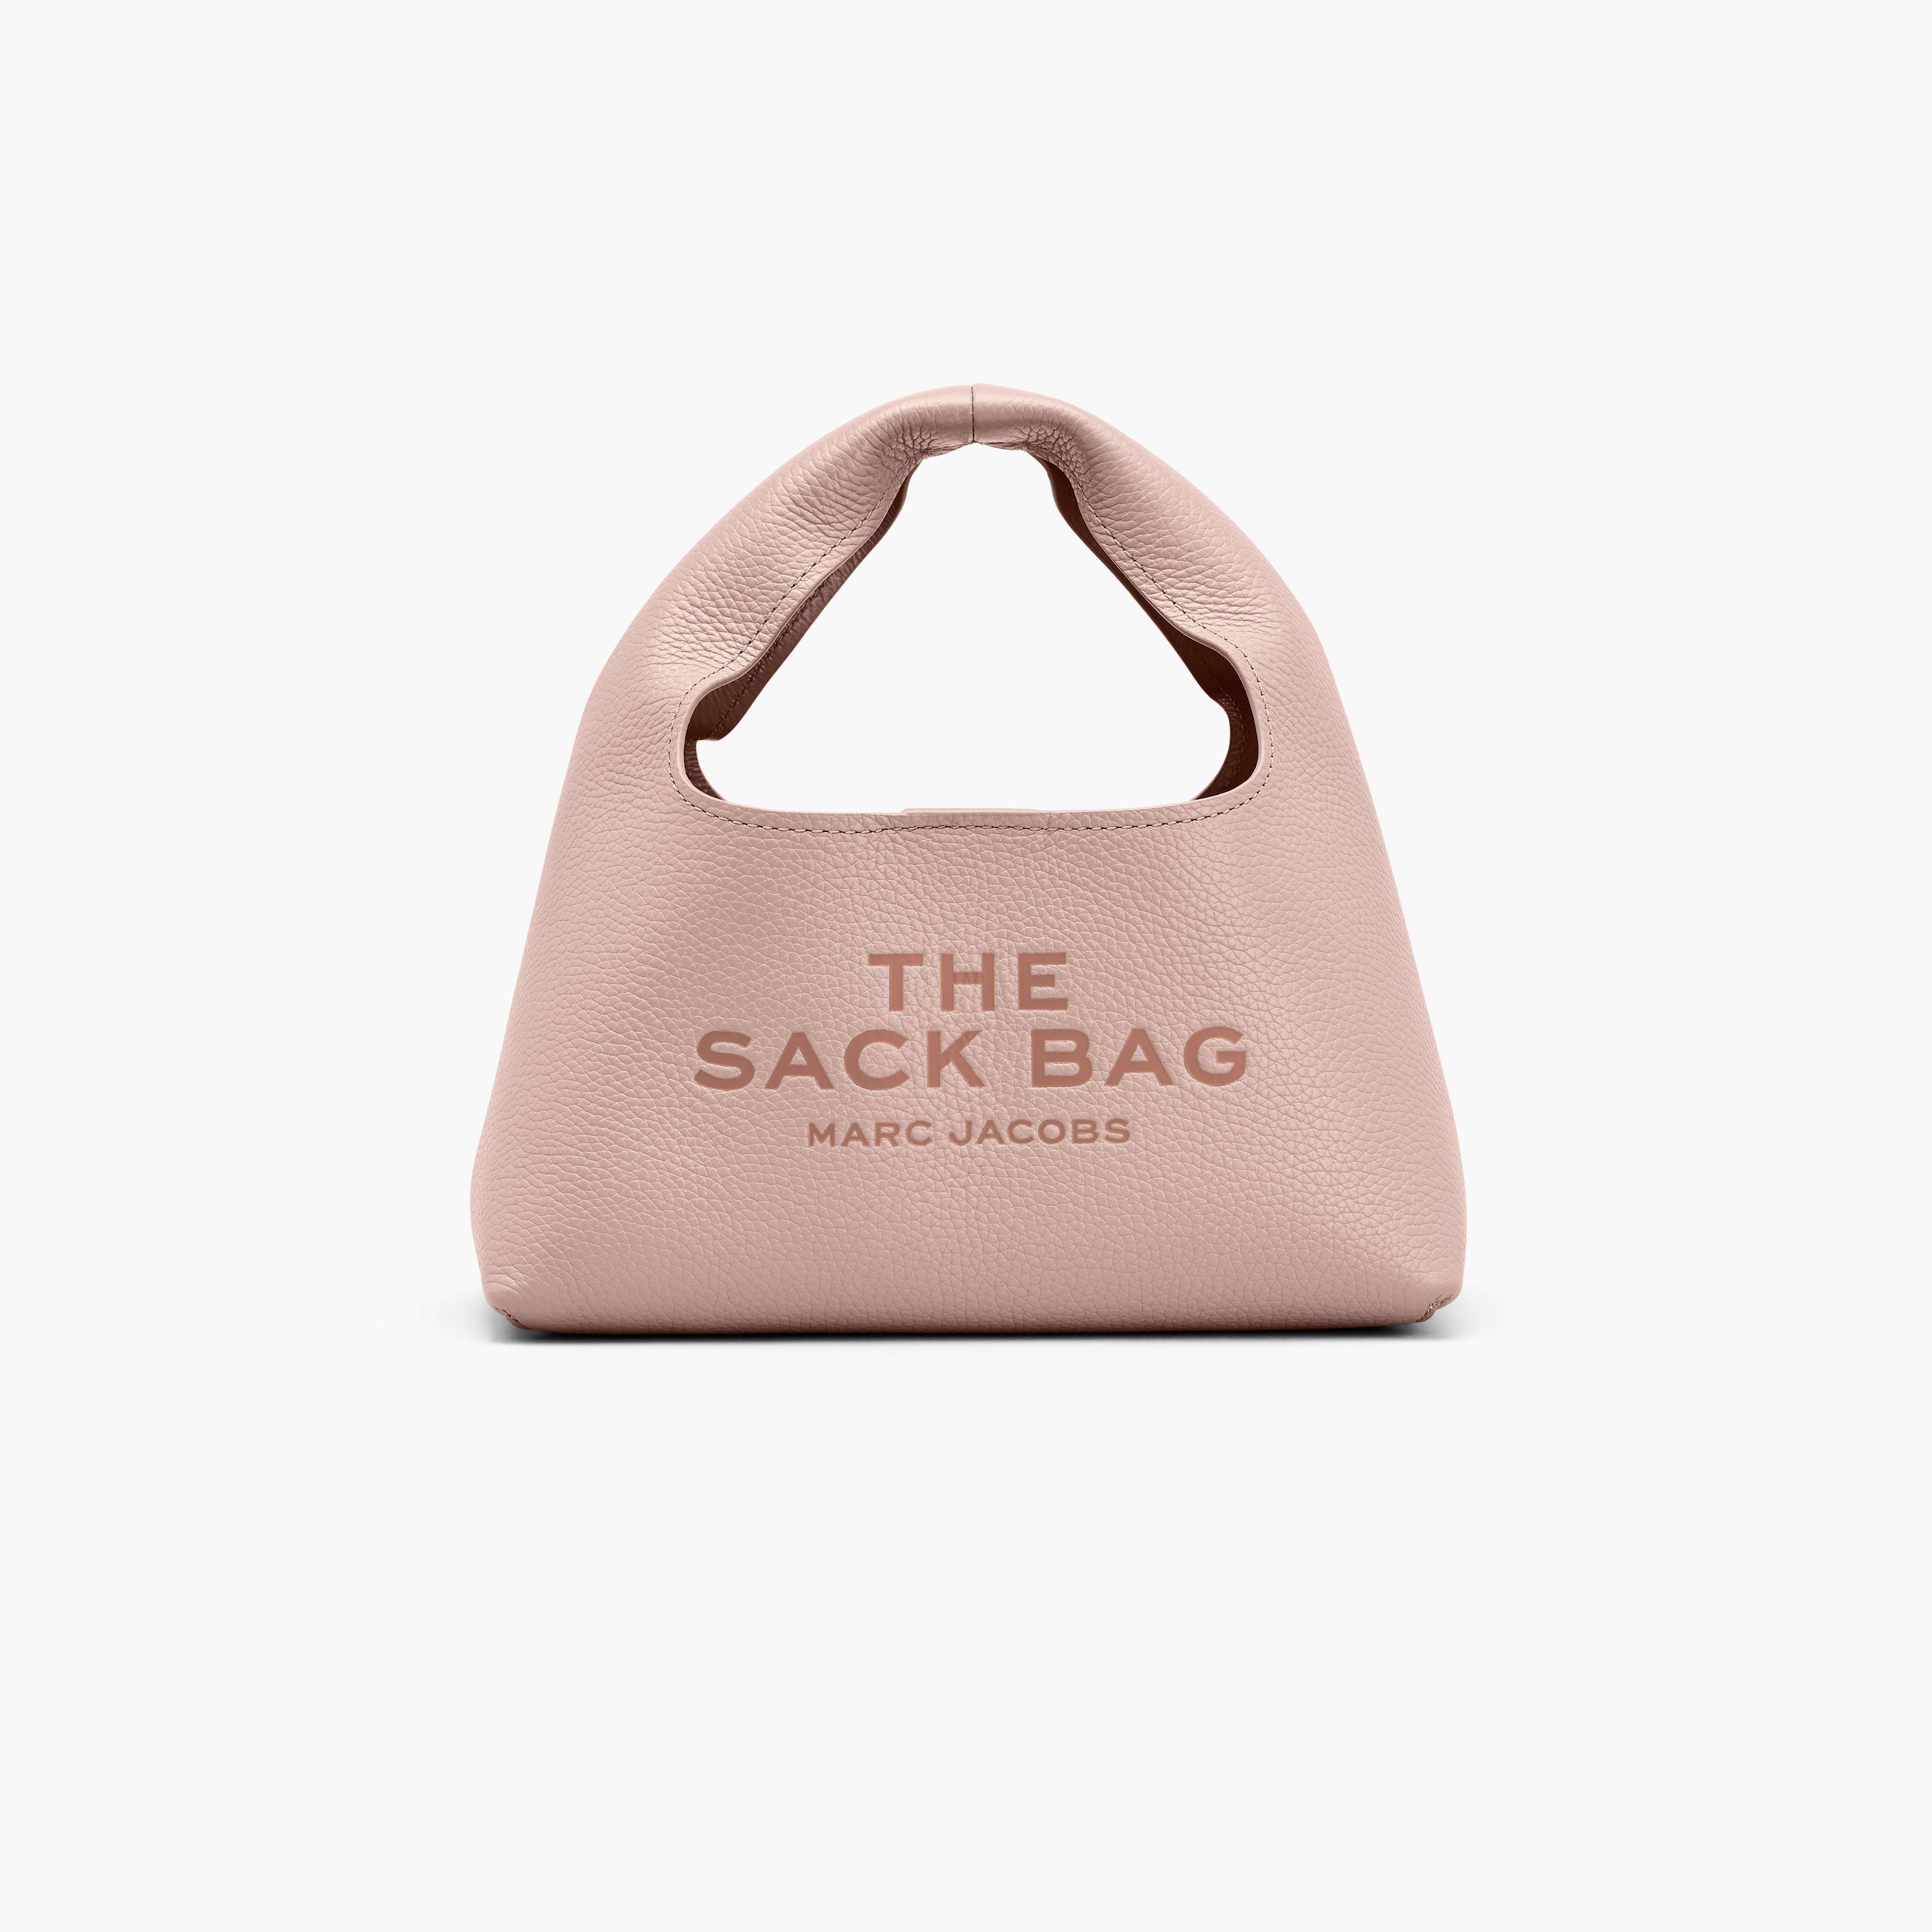 The Mini Sack Bag in Rose